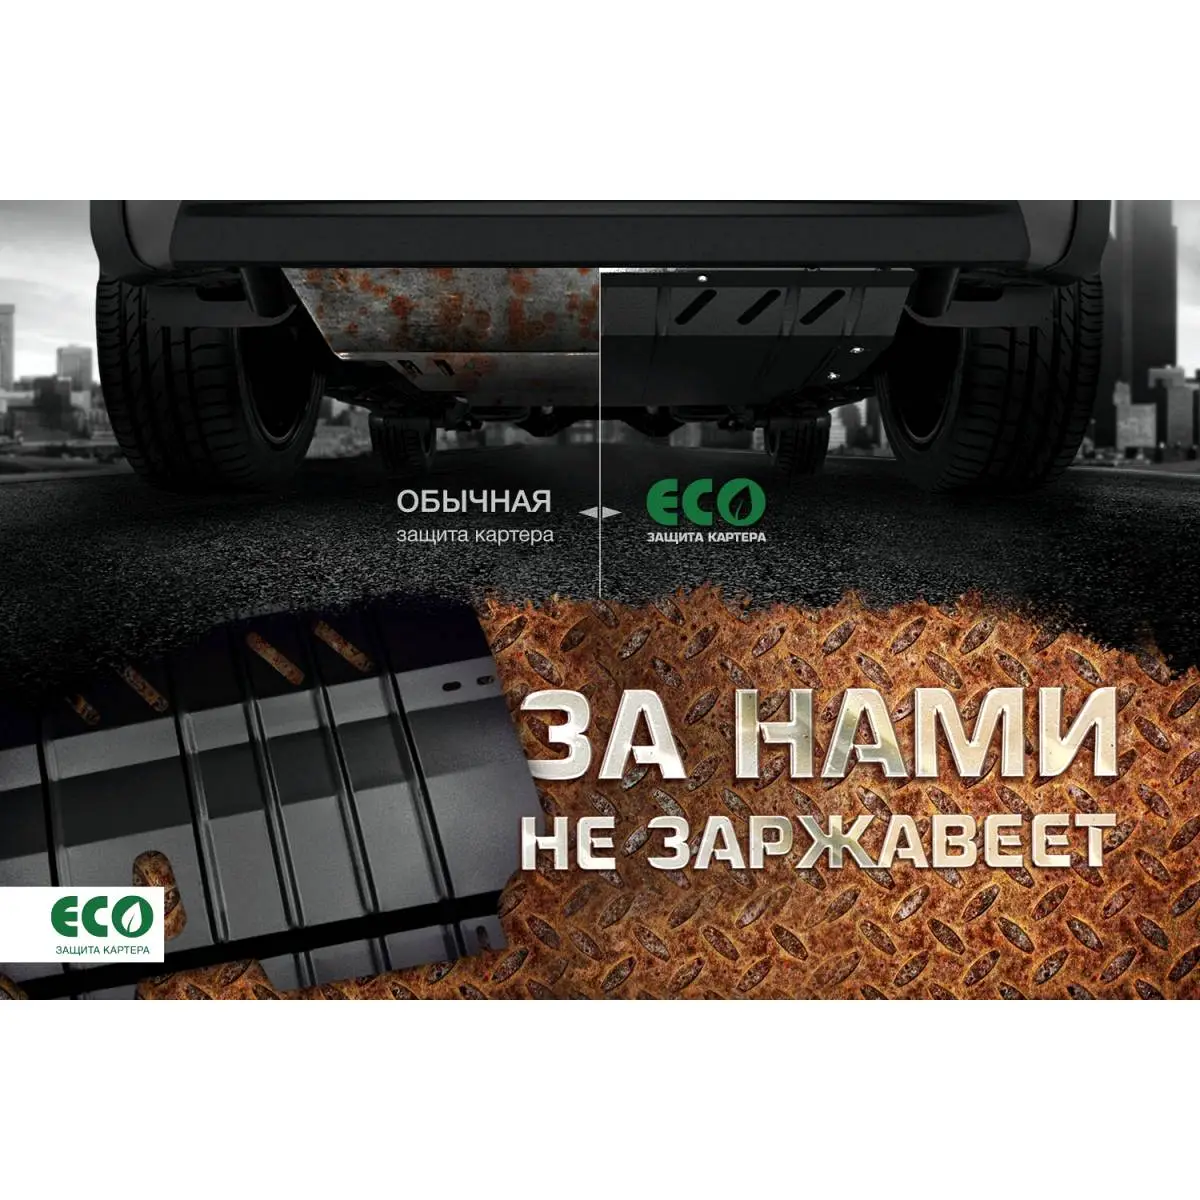 Комплект защиты картера и крепеж Eco 1437099119 I1H5 U XQ1PUH eco5135020 изображение 8